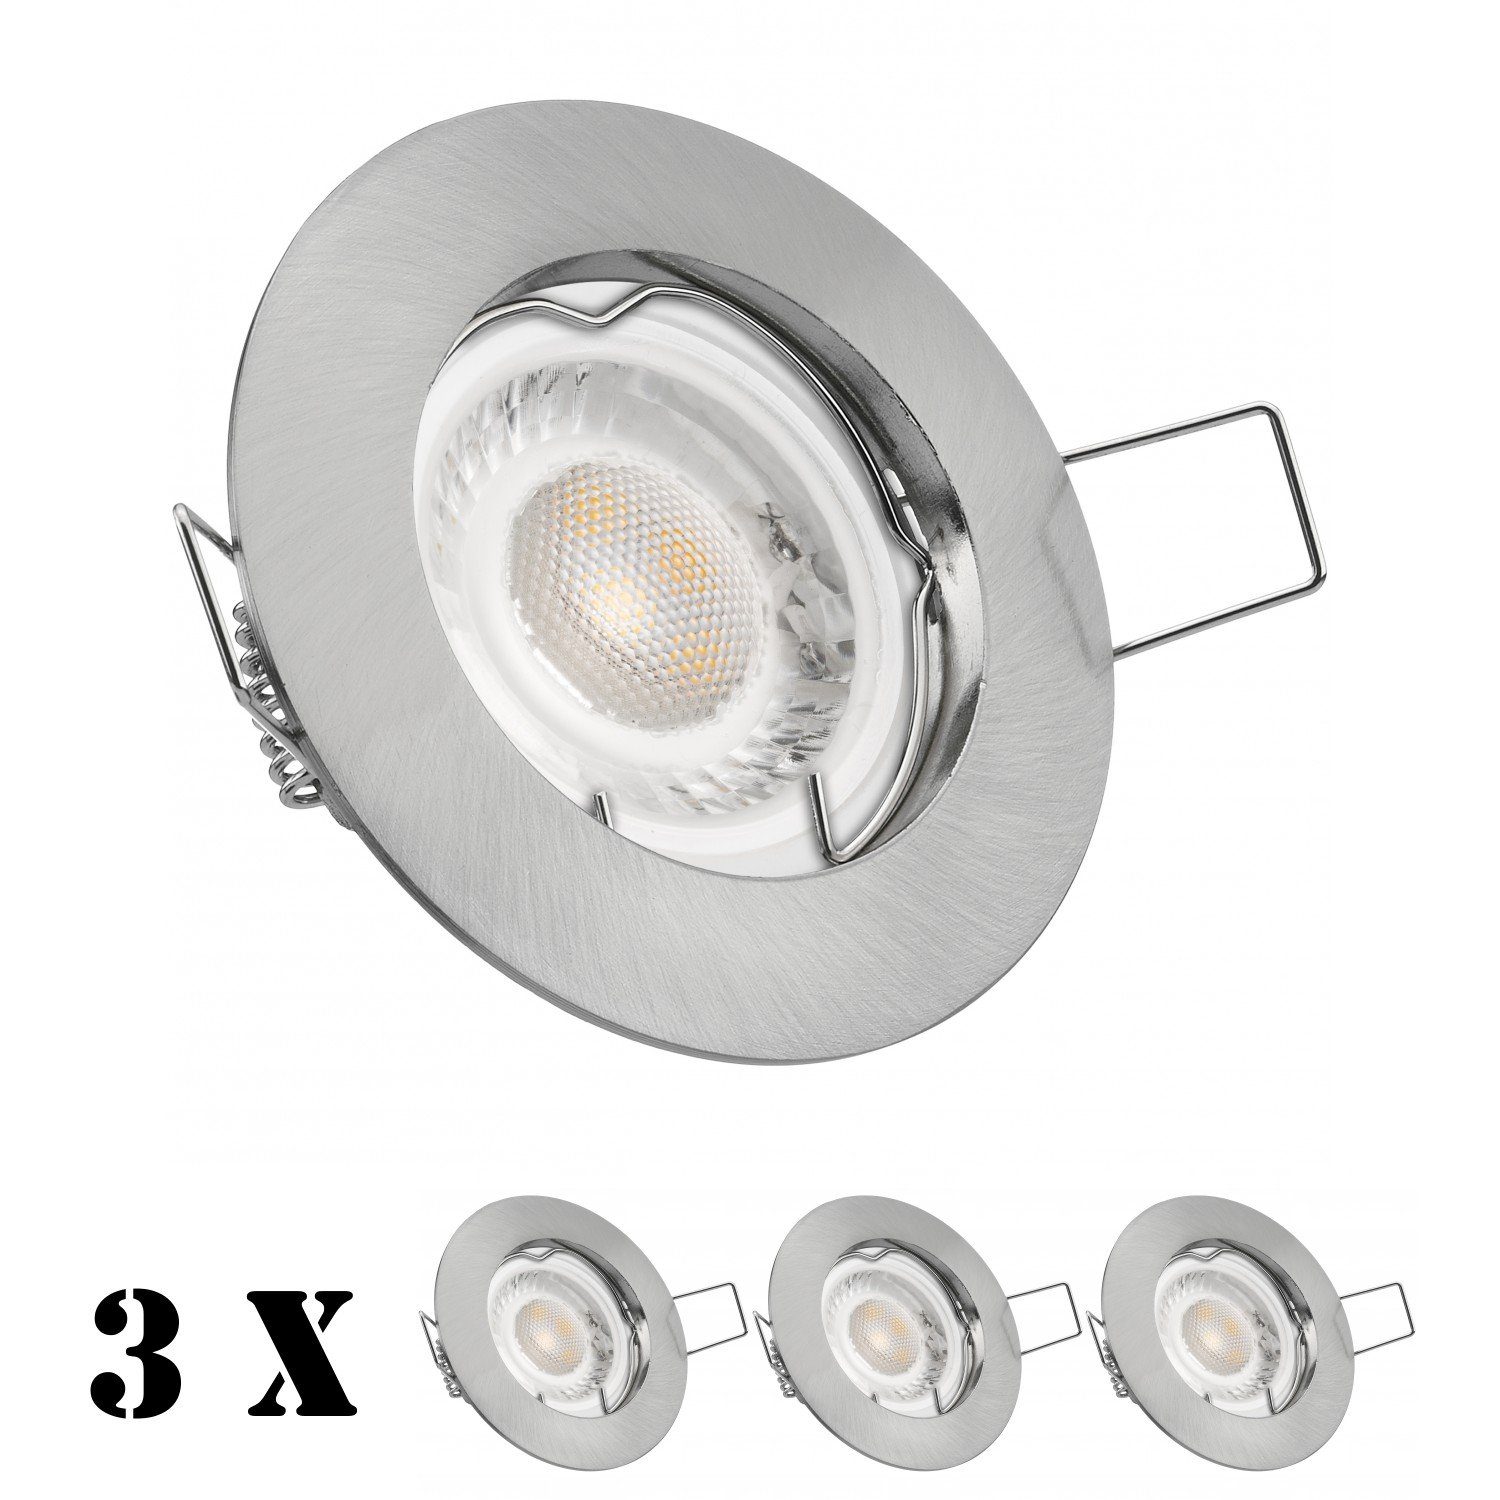 edelstahl Einbaustrahler LED in flach silber / gebürstet extra 3er LED Einbaustrahler Set LEDANDO